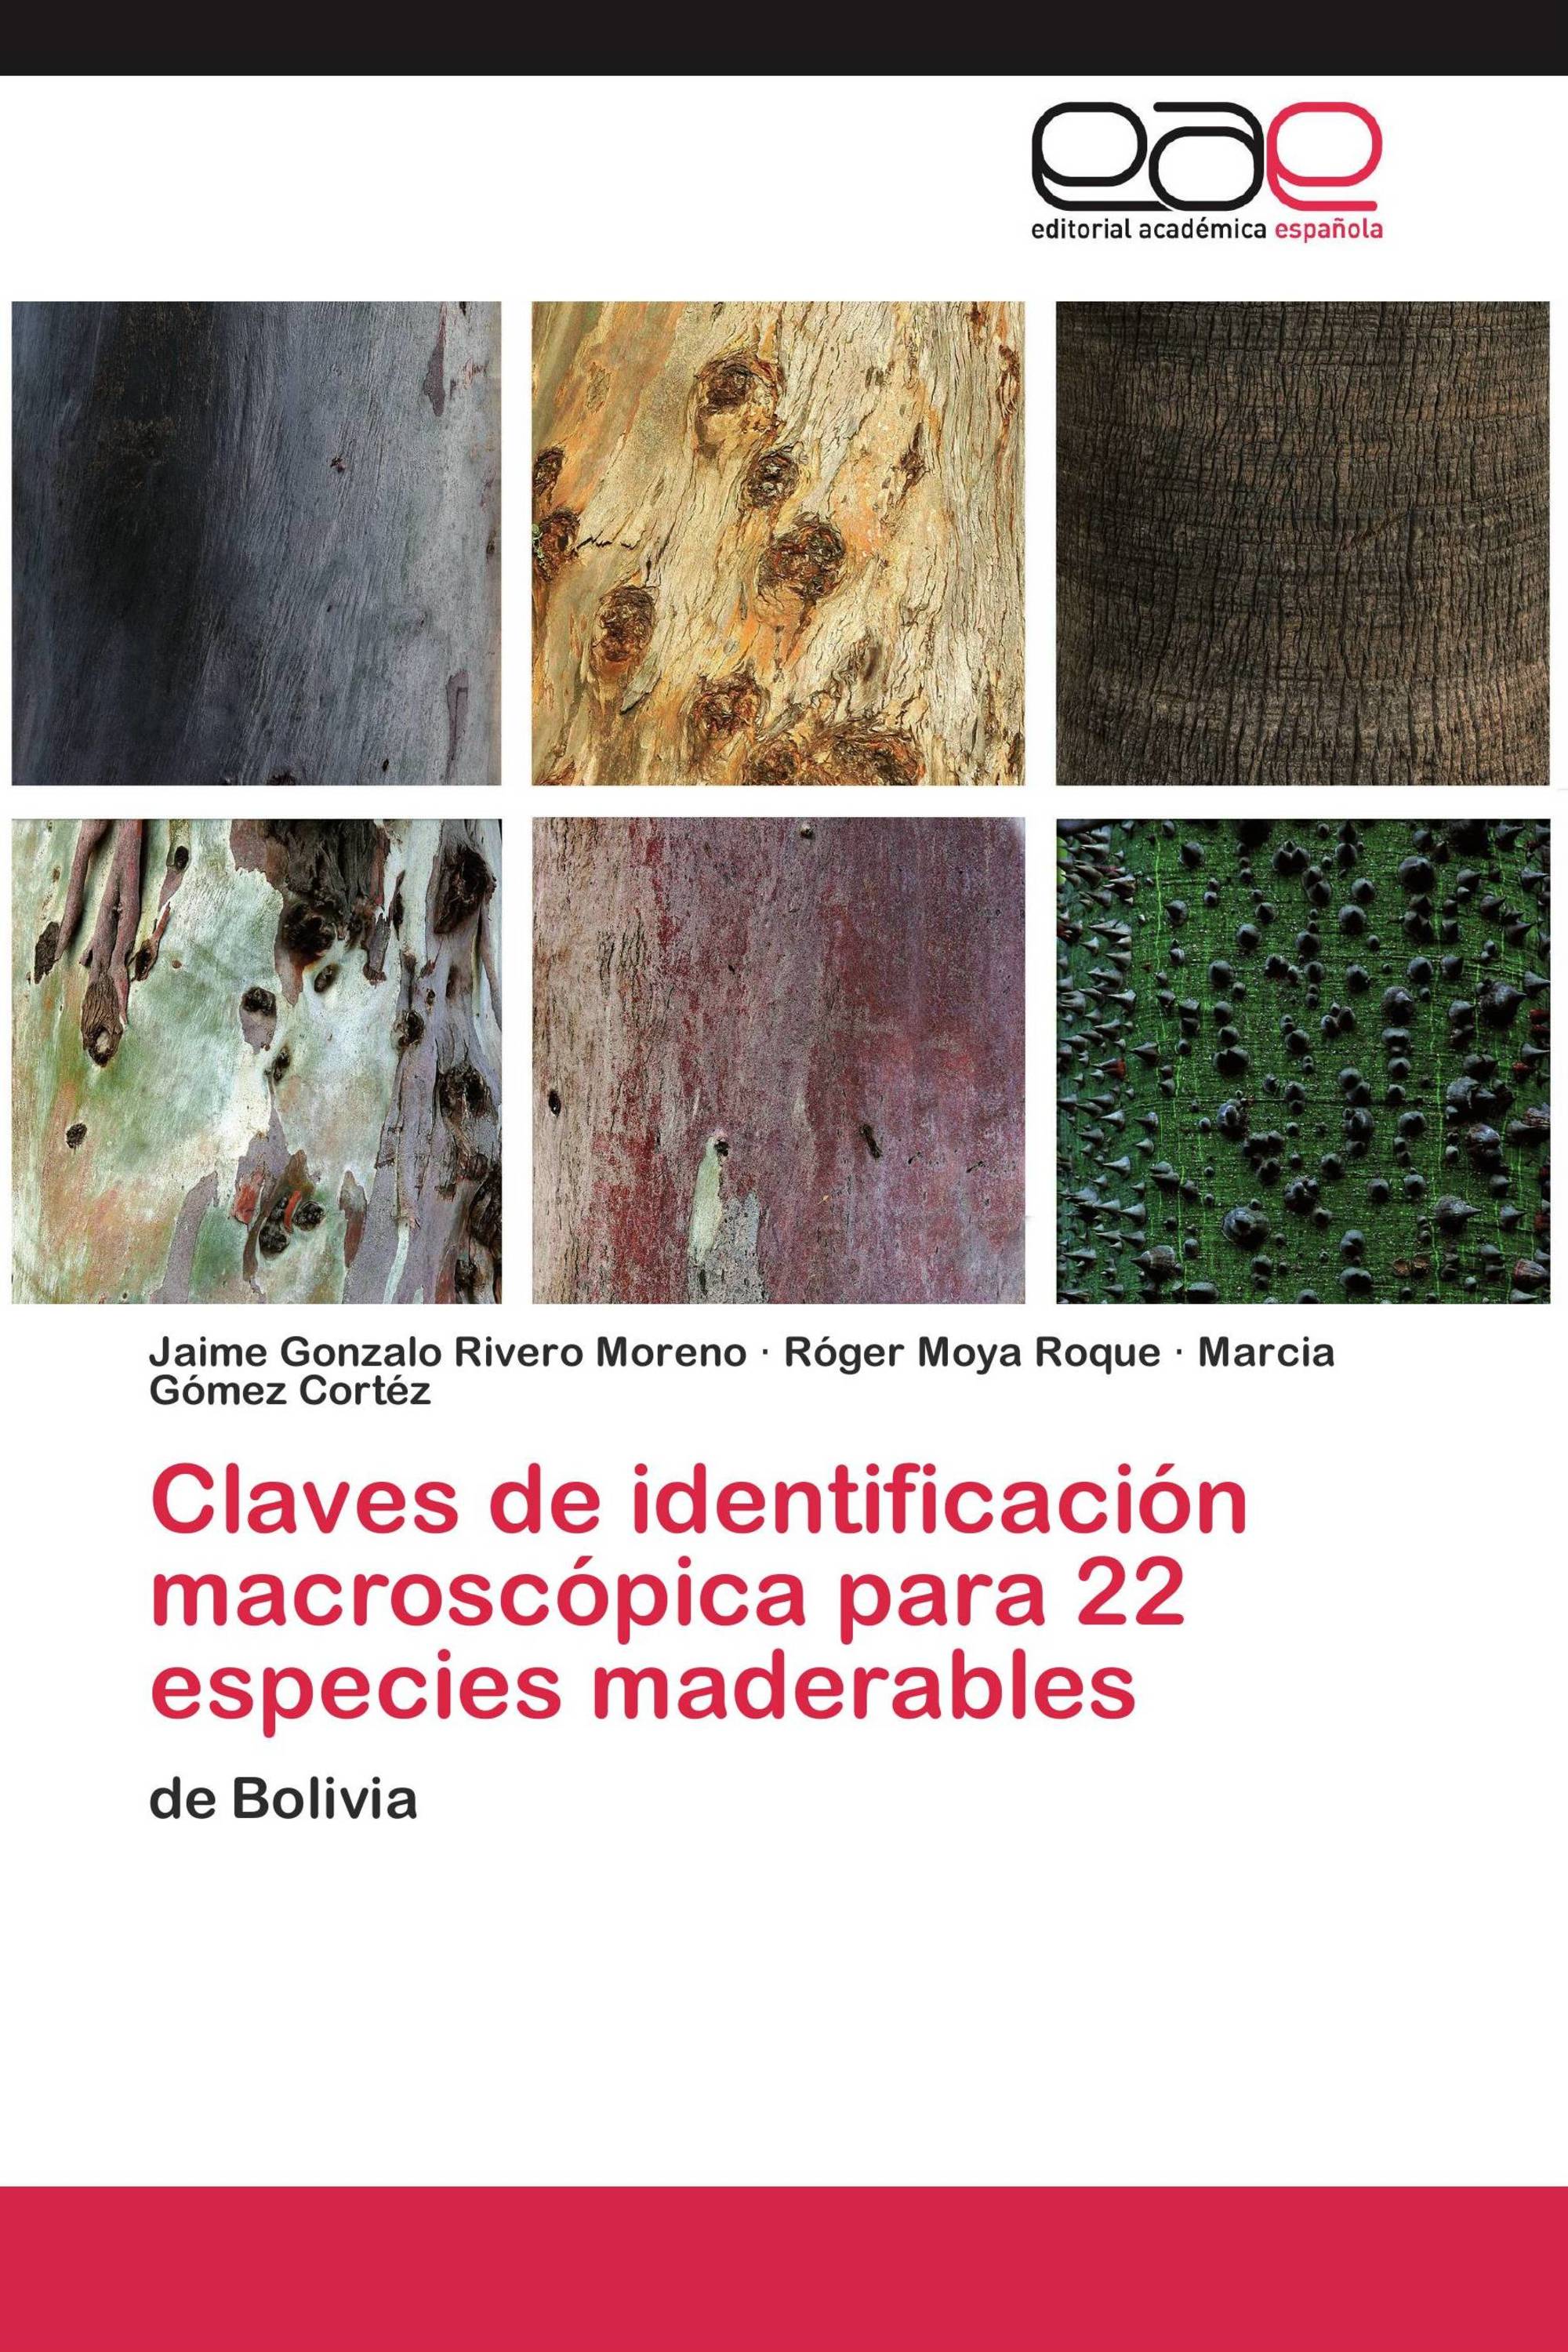 Claves de identificación macroscópica para 22 especies maderables